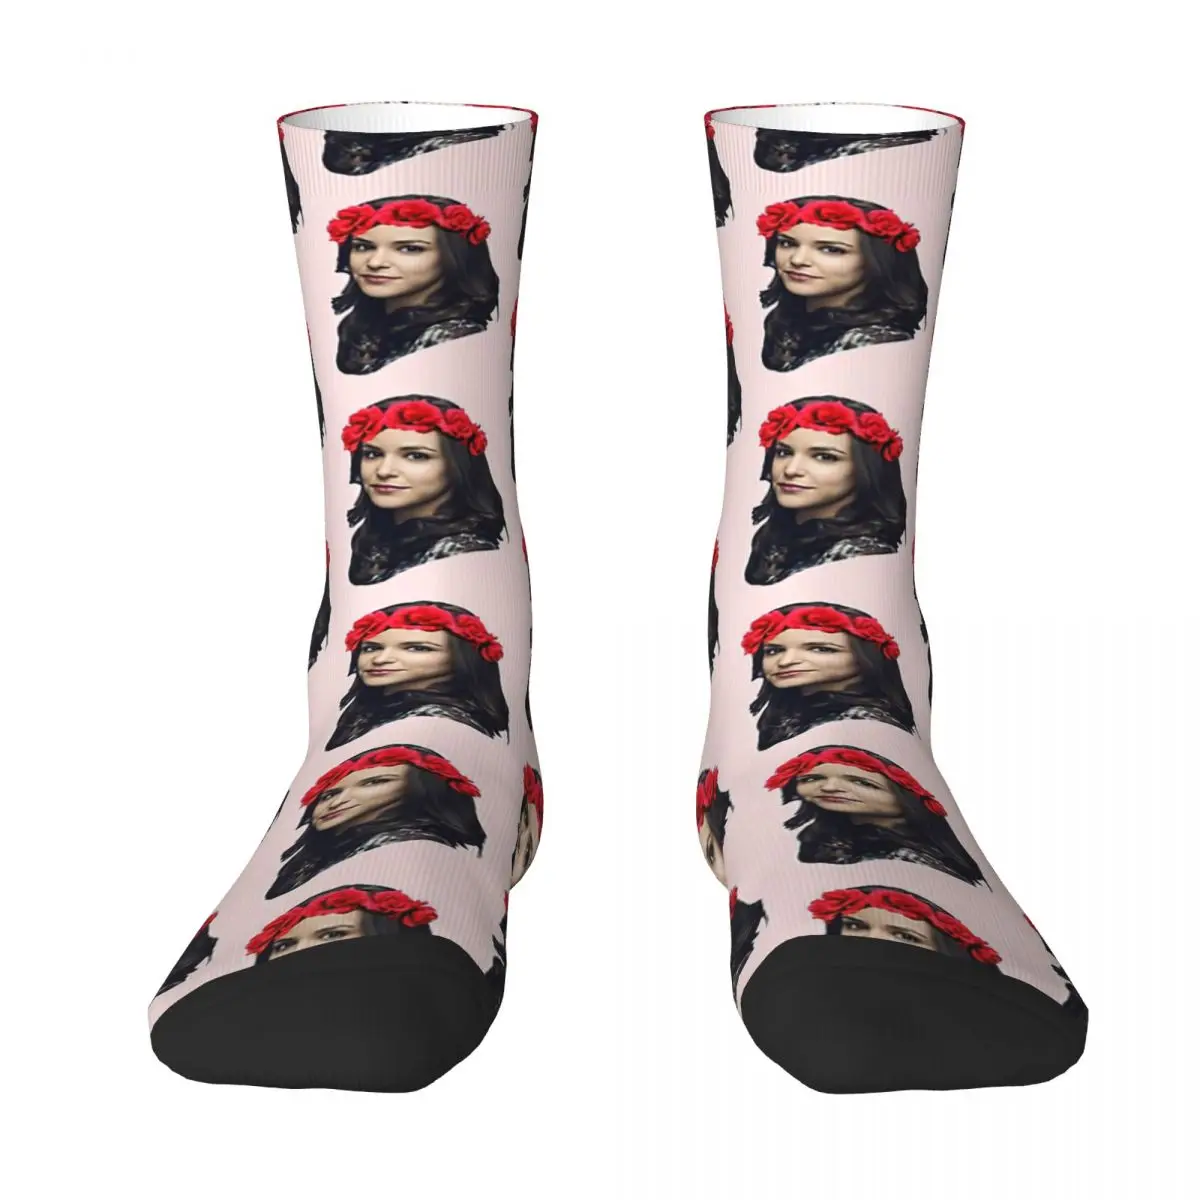 Melissa Fumero Flower Crown Adult Socks Unisex socks,men Socks women Socks